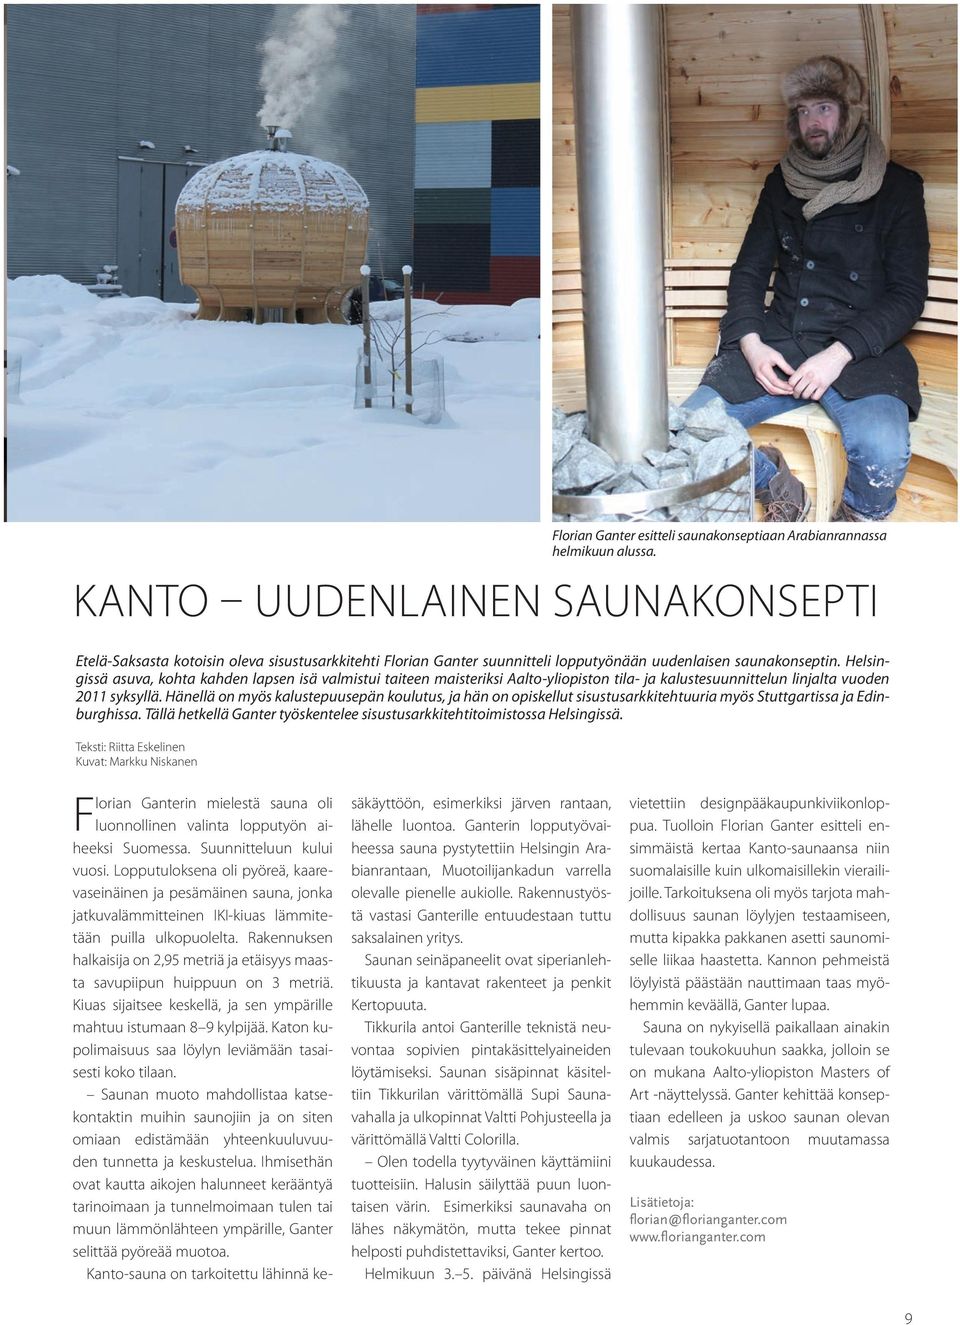 Helsingissä asuva, kohta kahden lapsen isä valmistui taiteen maisteriksi Aalto-yliopiston tila- ja kalustesuunnittelun linjalta vuoden 2011 syksyllä.